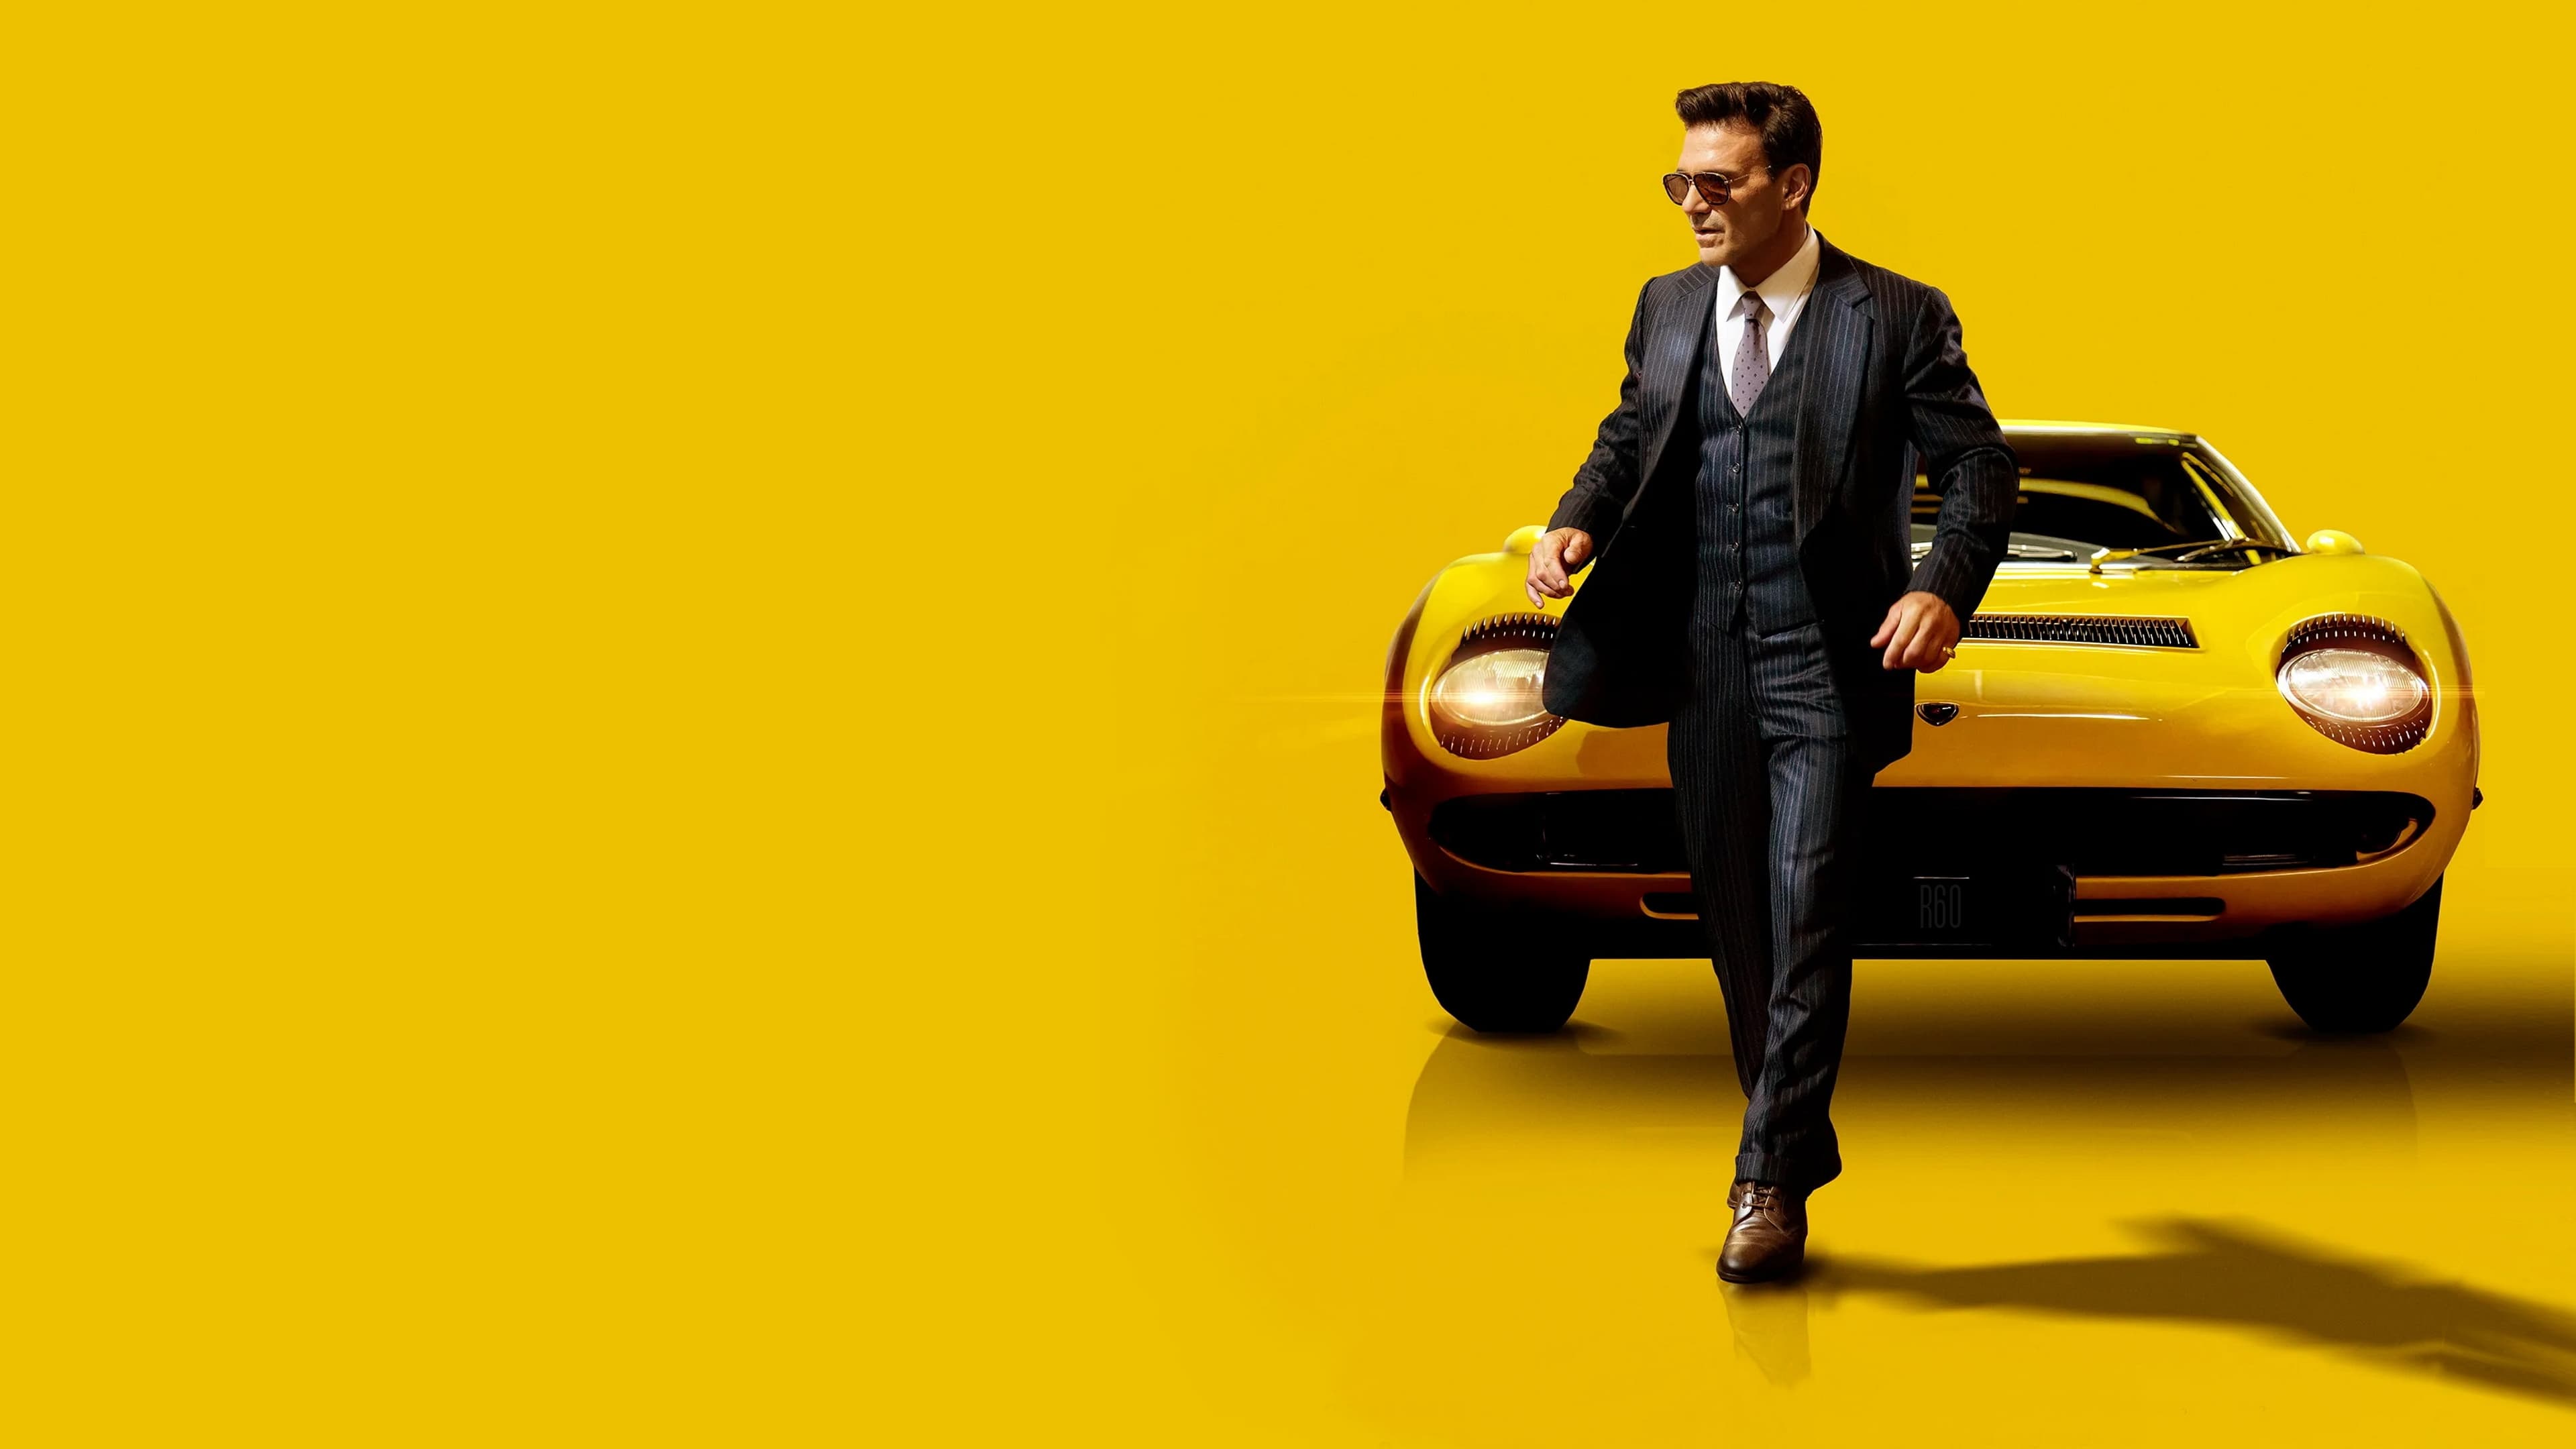 Lamborghini: El hombre detrás de la leyenda